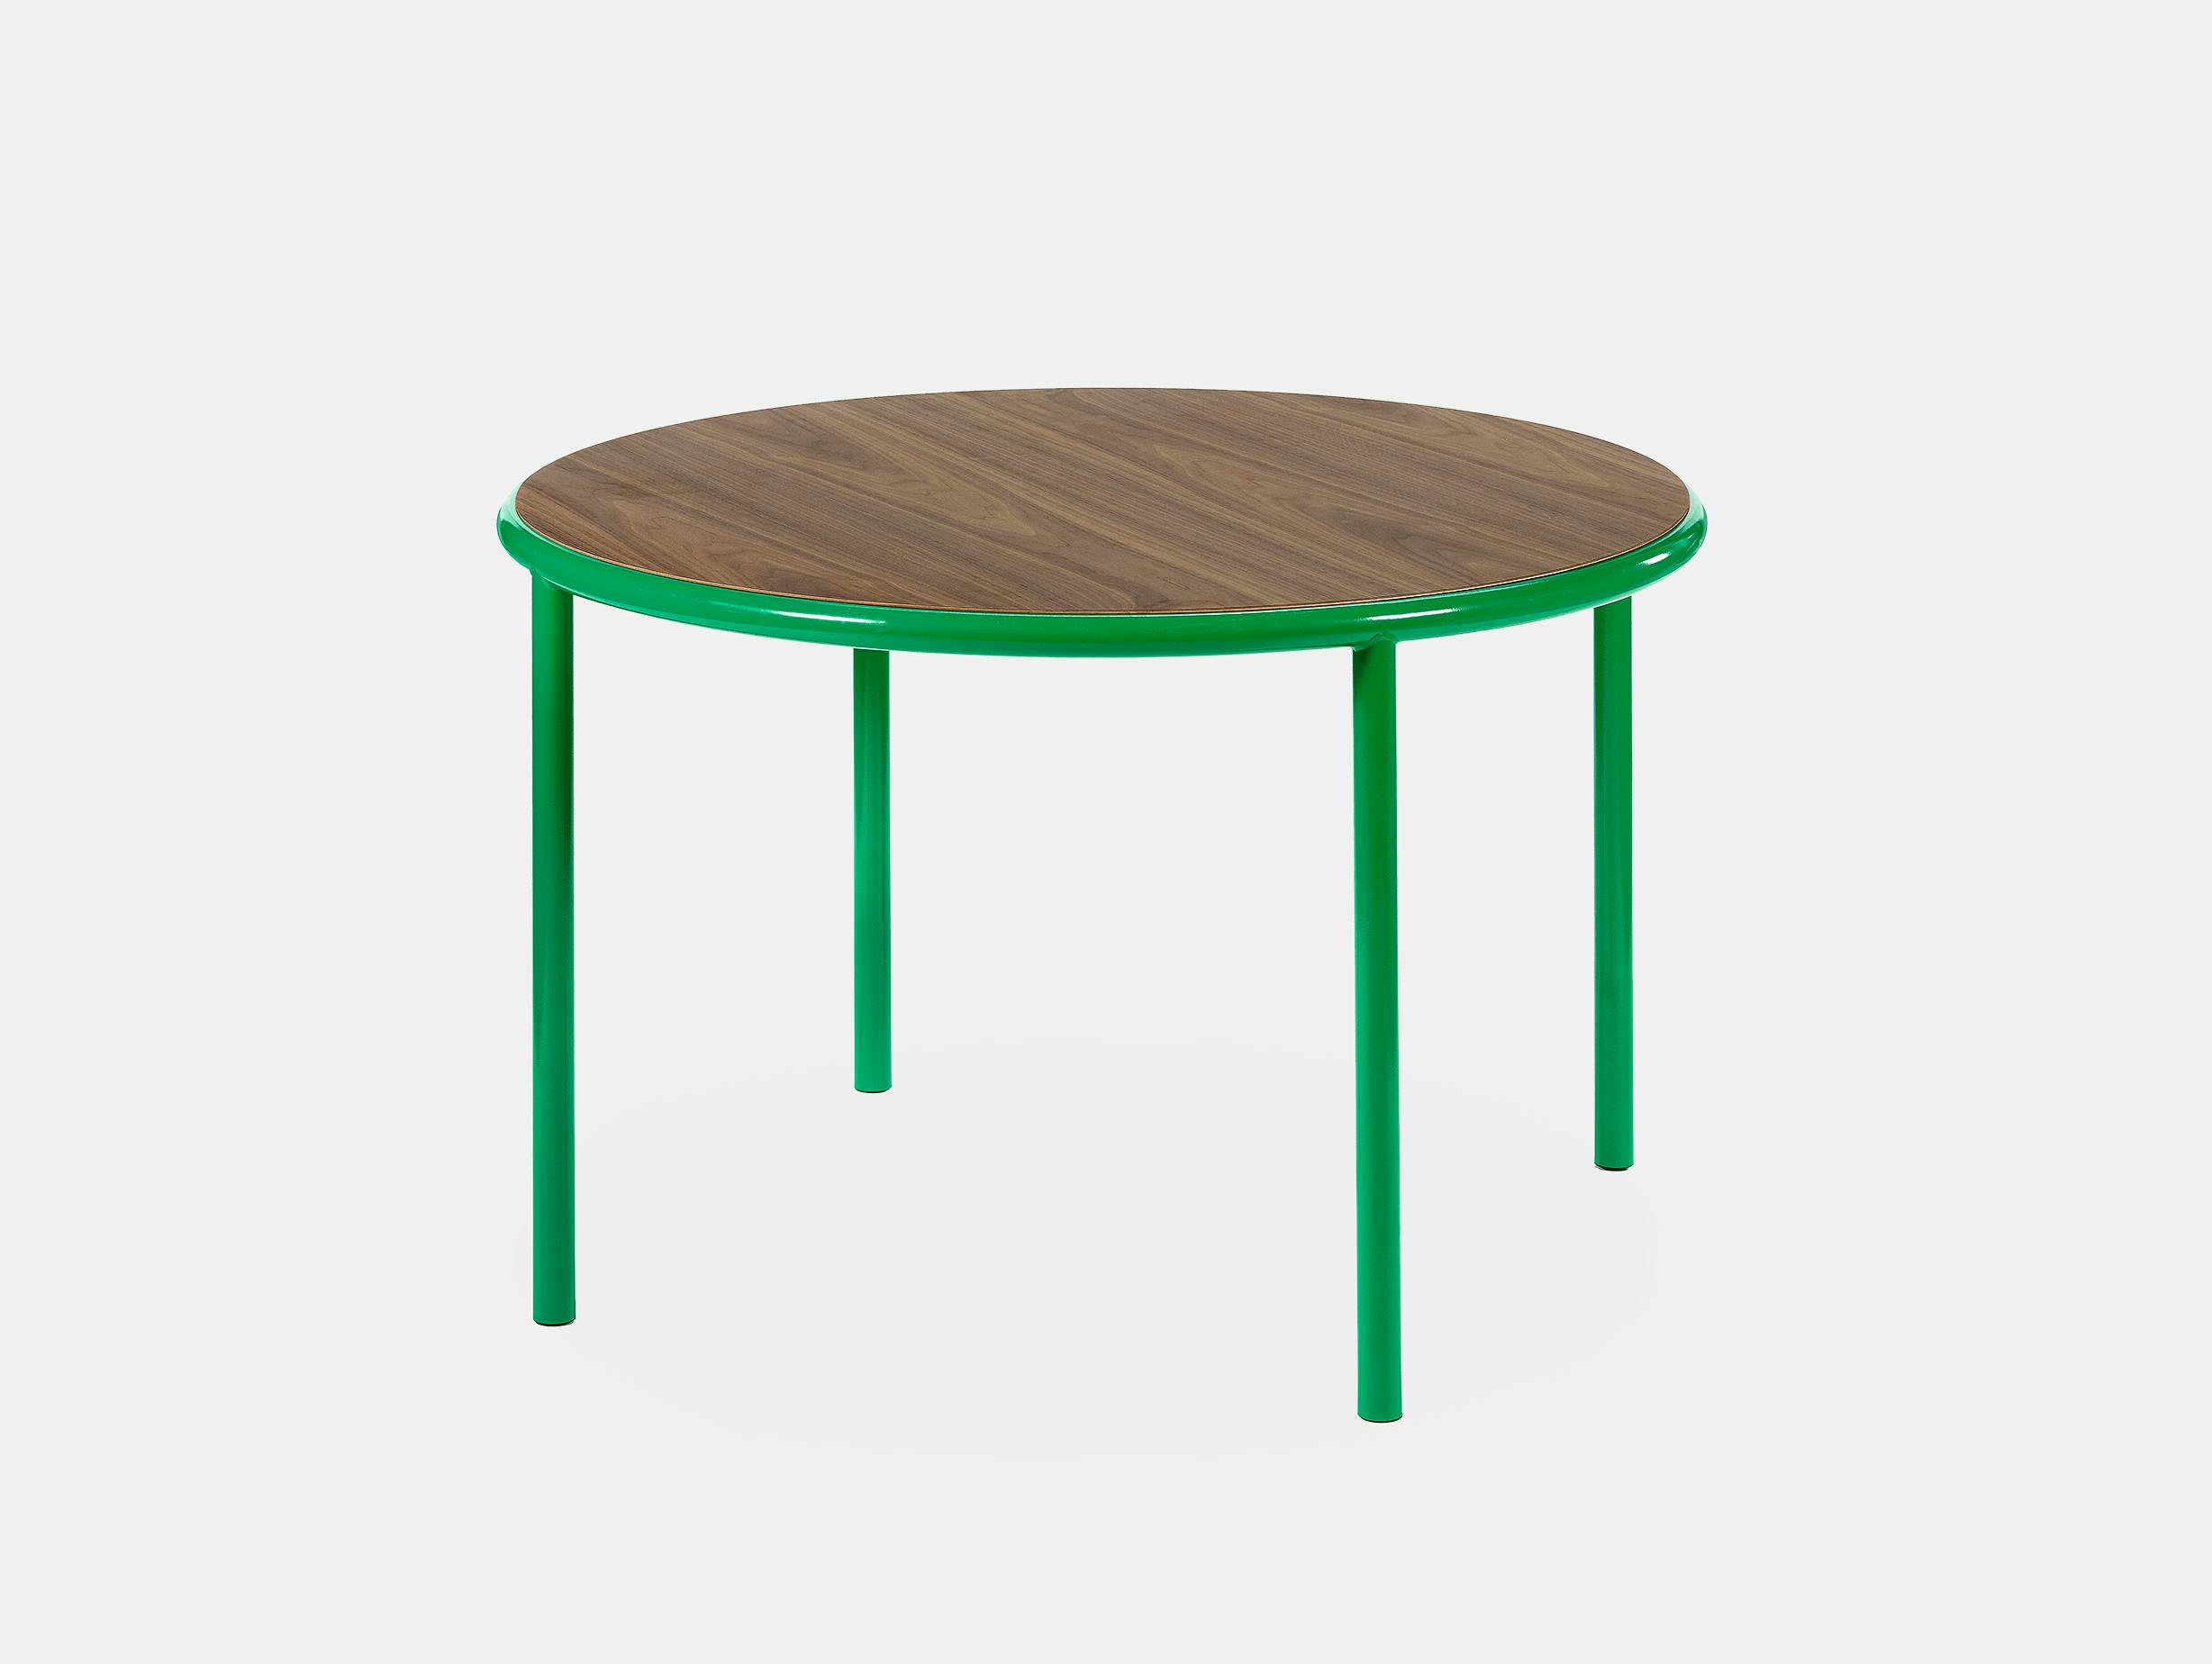 Muller van severen wooden table small round green walnut